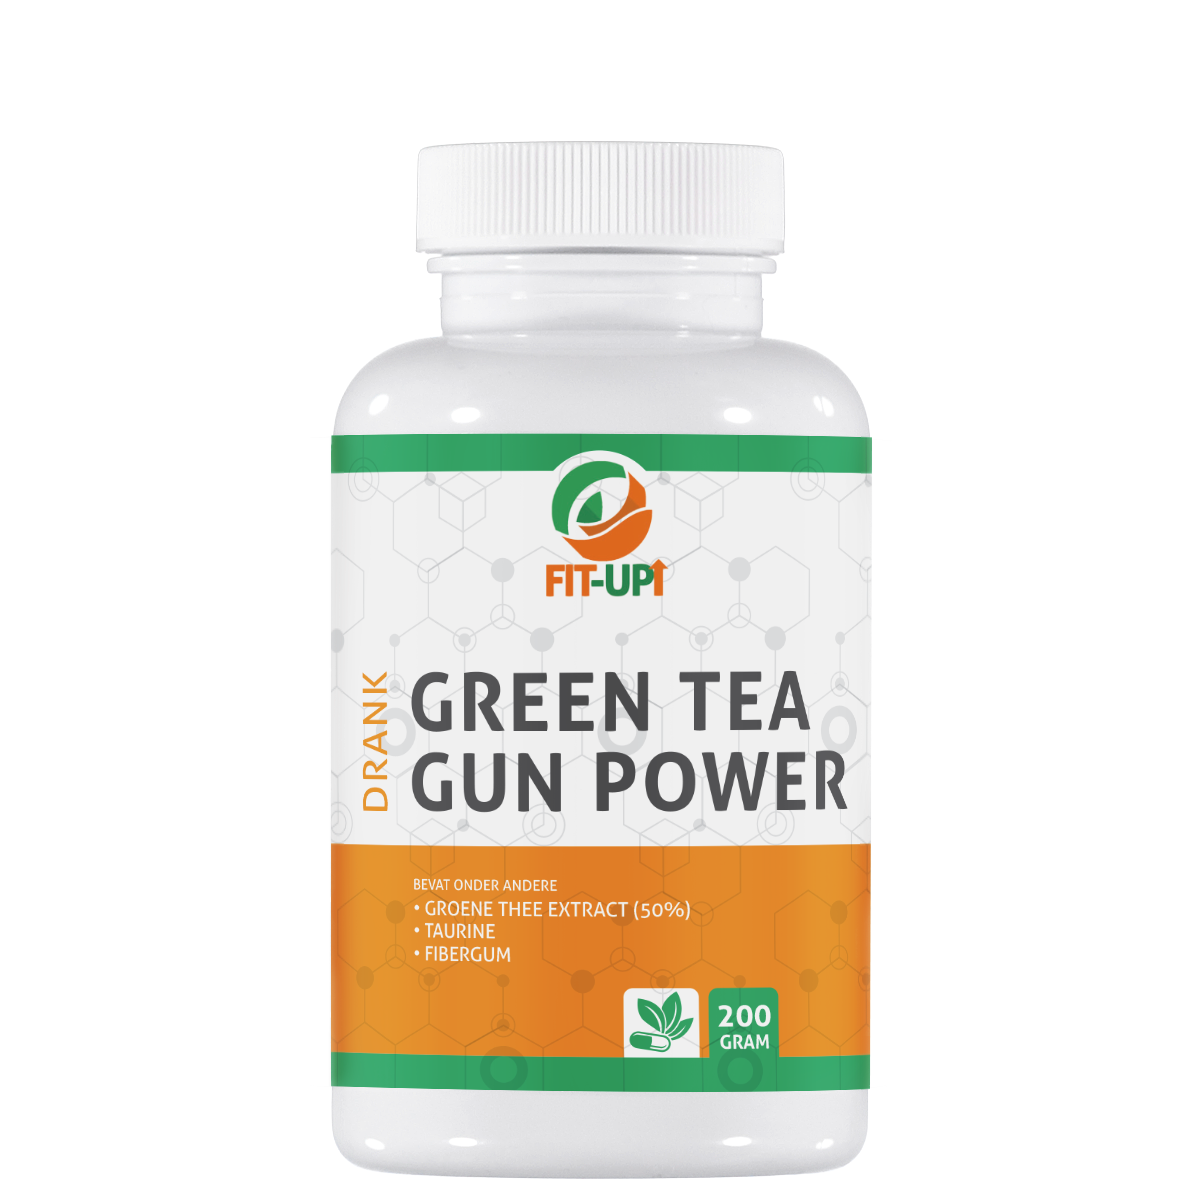 Green tea gun power | drink